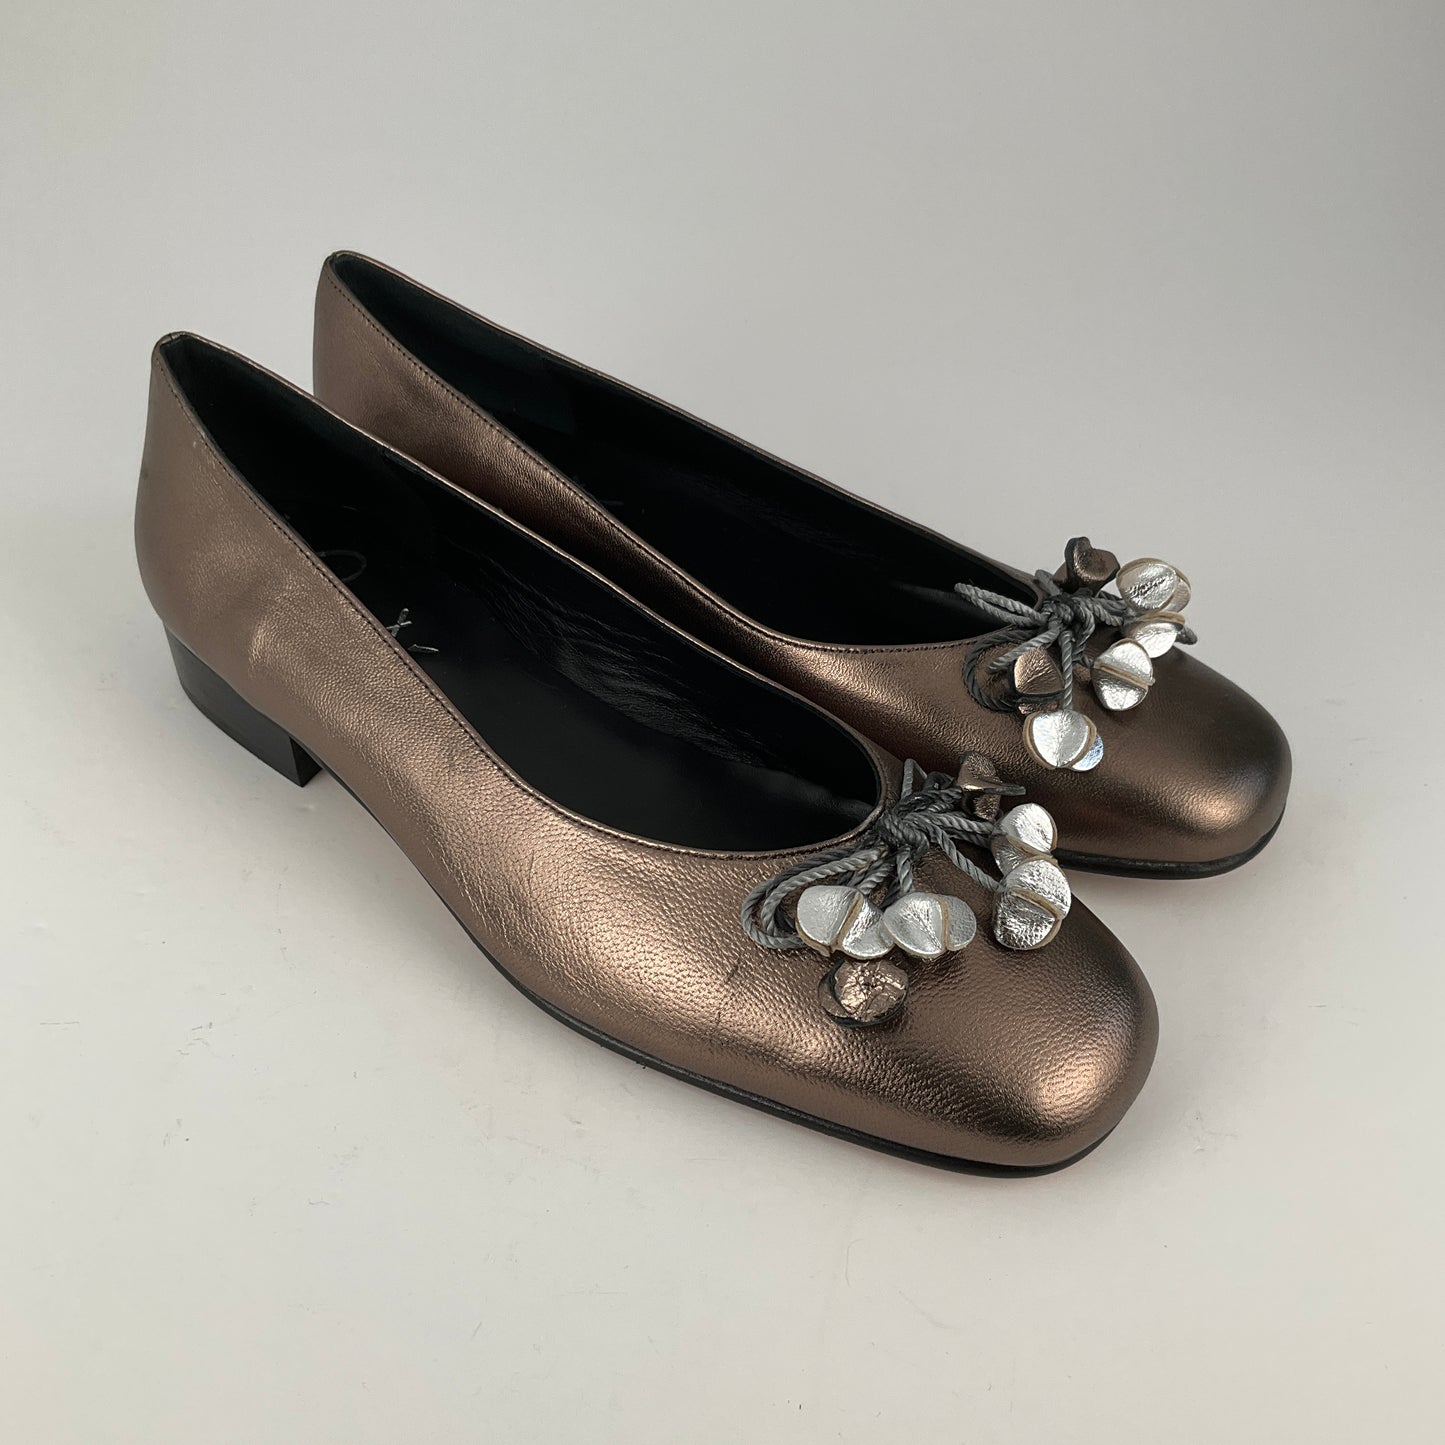 Beatrice - Mascotti Slip On Shoes - Size 38